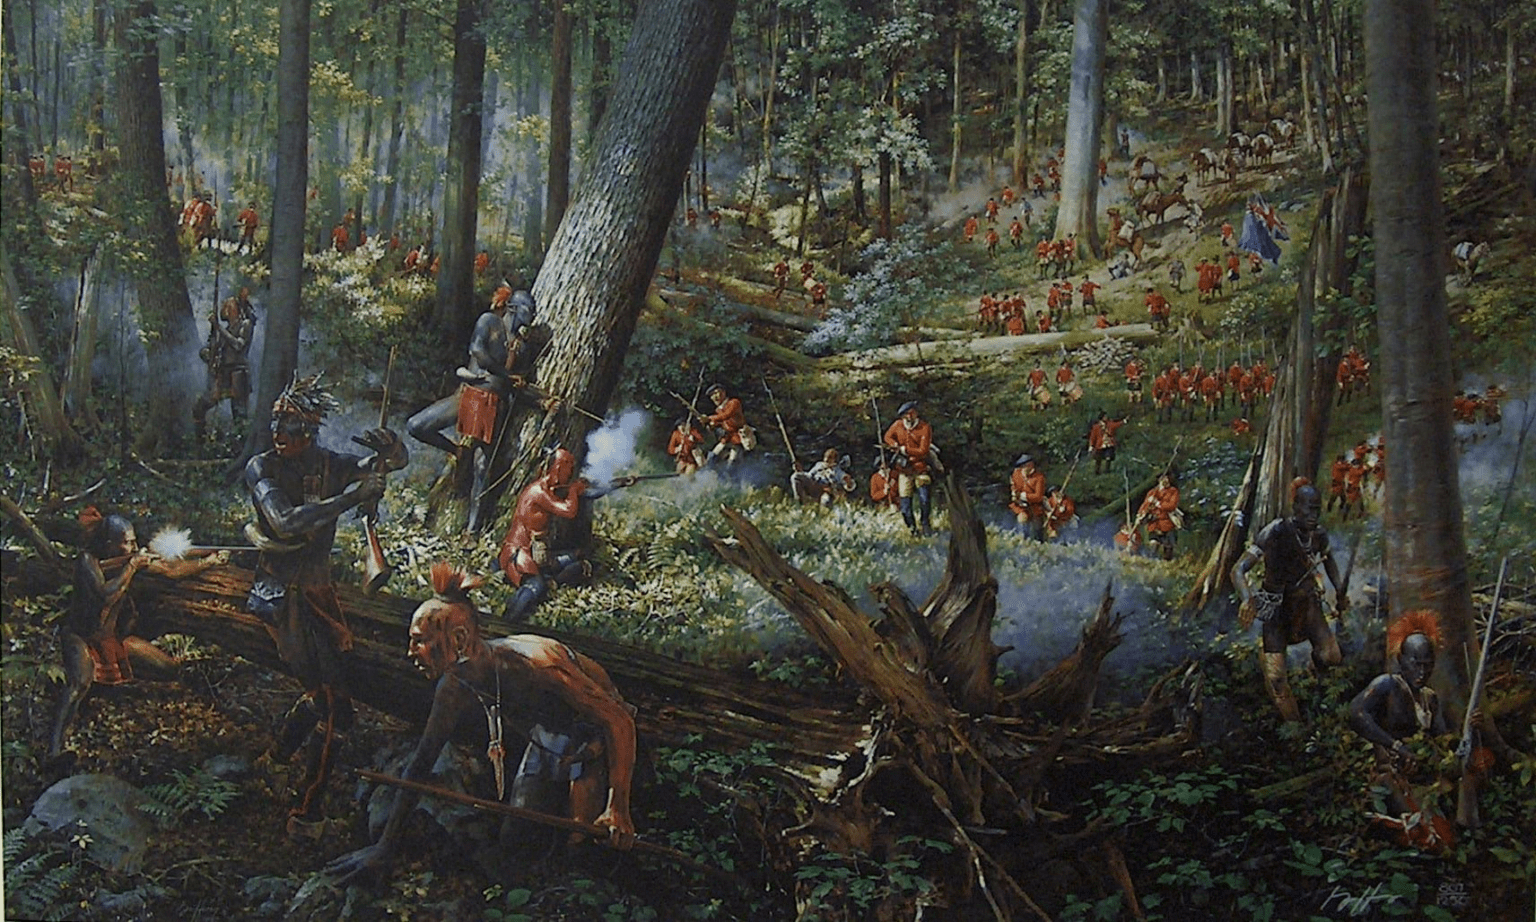 batalla-de-monongahela-9-de-julio-de-1755--los-indios-atacando-los-flancos-de-la-columna-britanica-1536x922.png